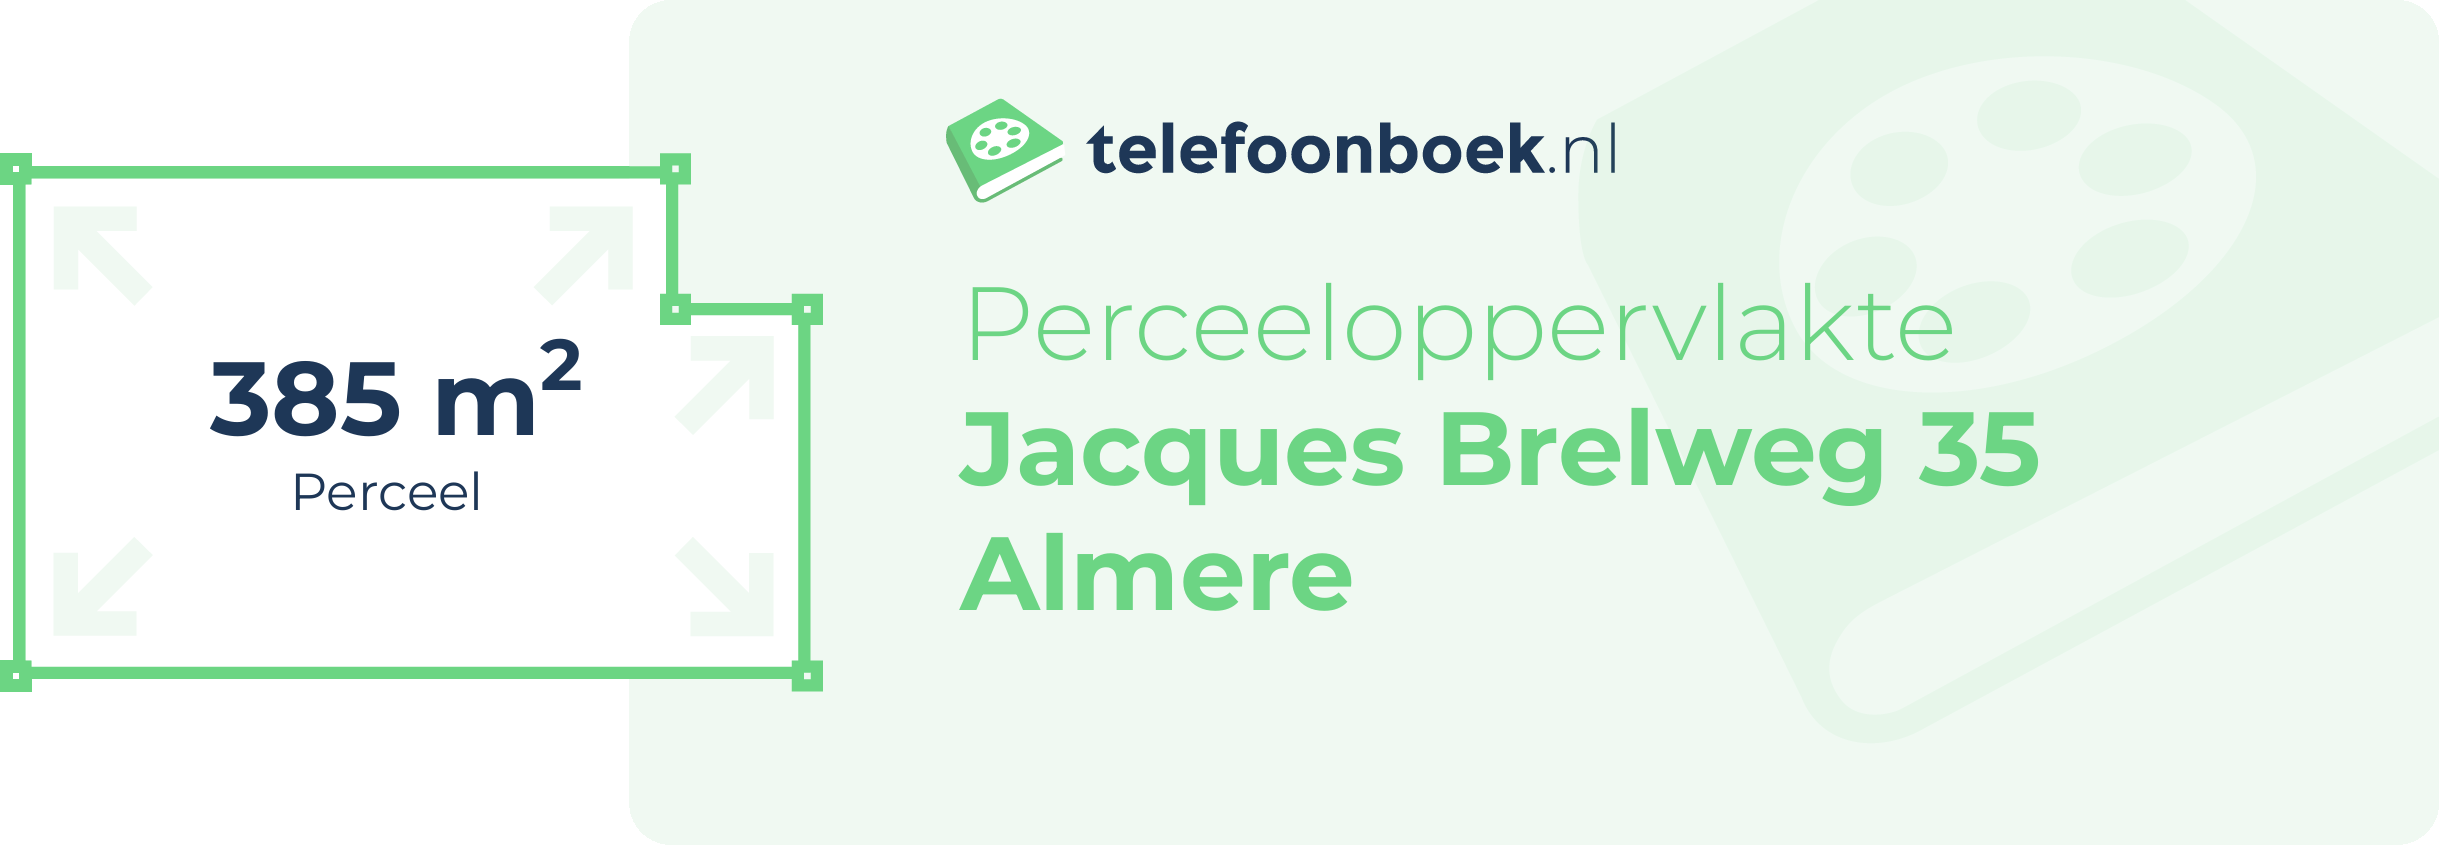 Perceeloppervlakte Jacques Brelweg 35 Almere